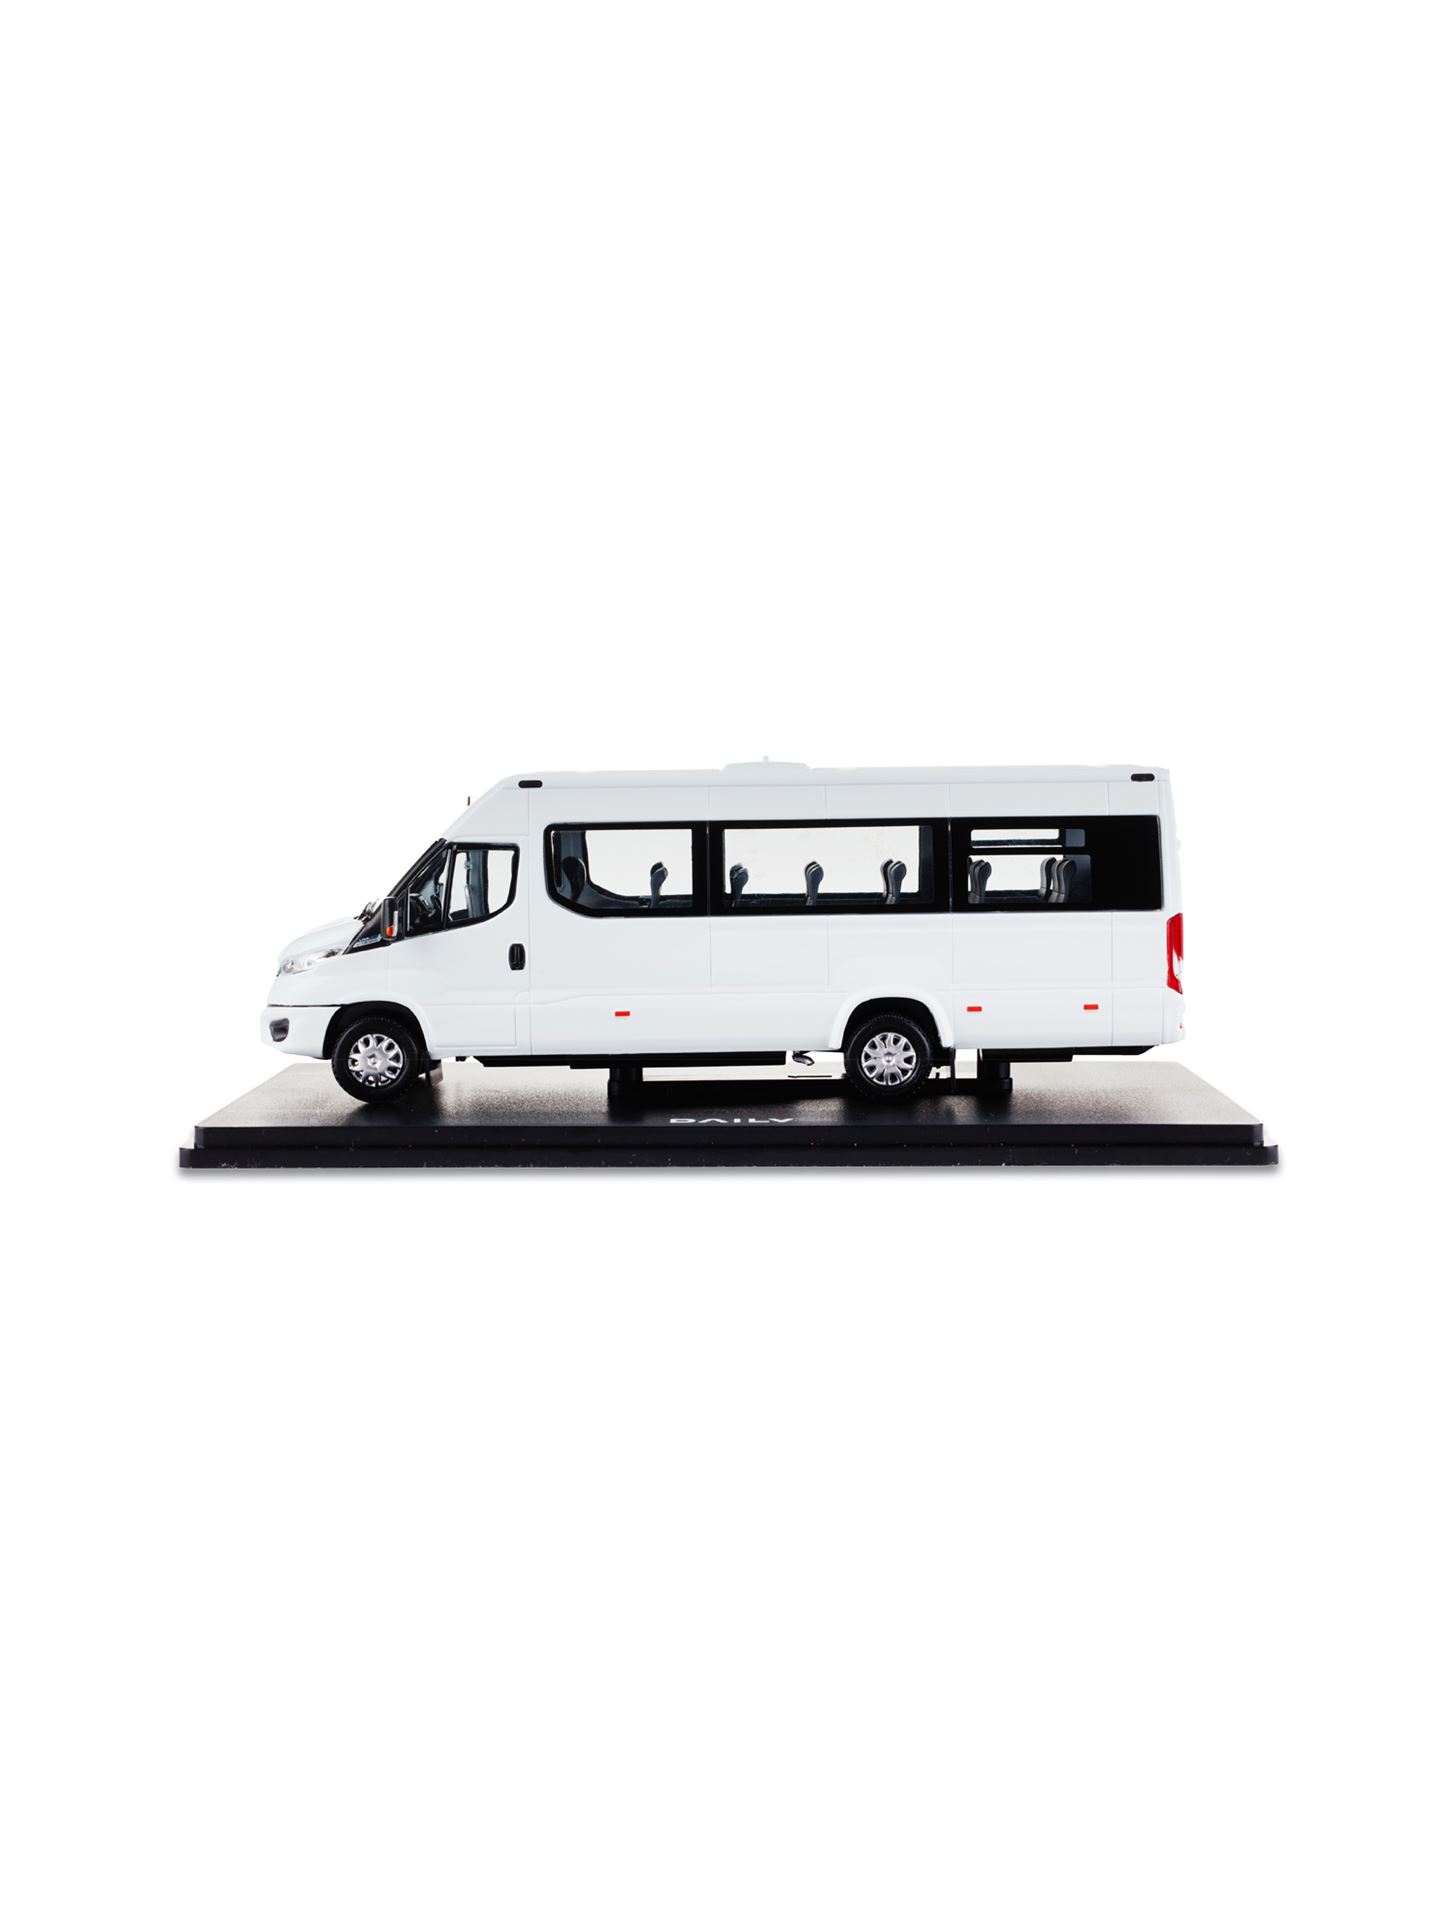 Iveco Bus Fanshop. WHITE DAILY MINIBUS NP Hi-MATIC - 1:43